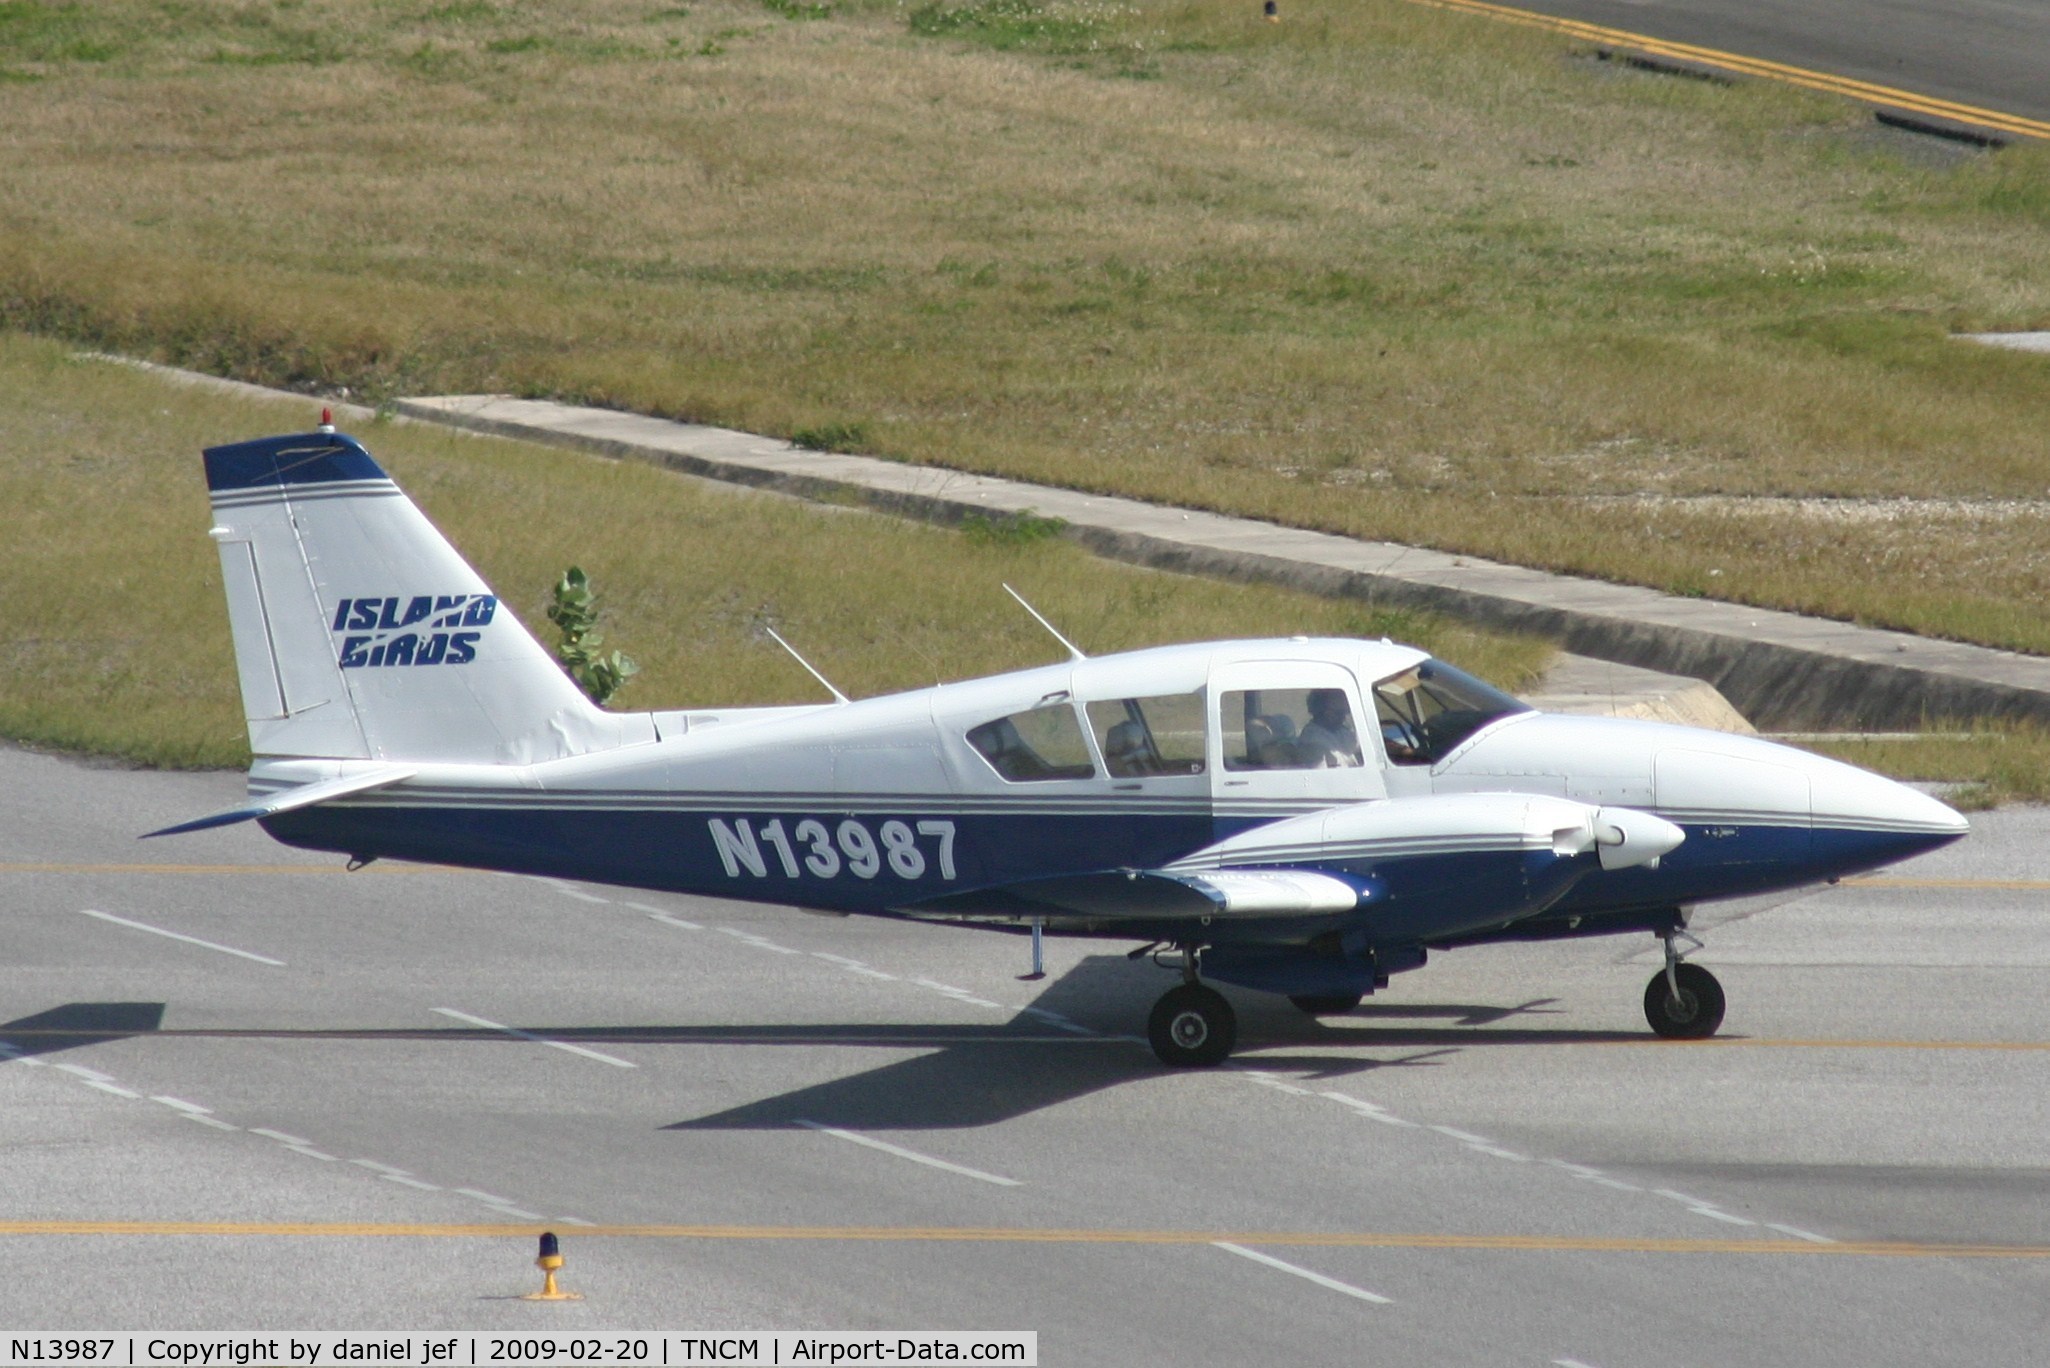 N13987, 1971 Piper PA-23-250 Aztec C/N 27-4605, taxing runway 10